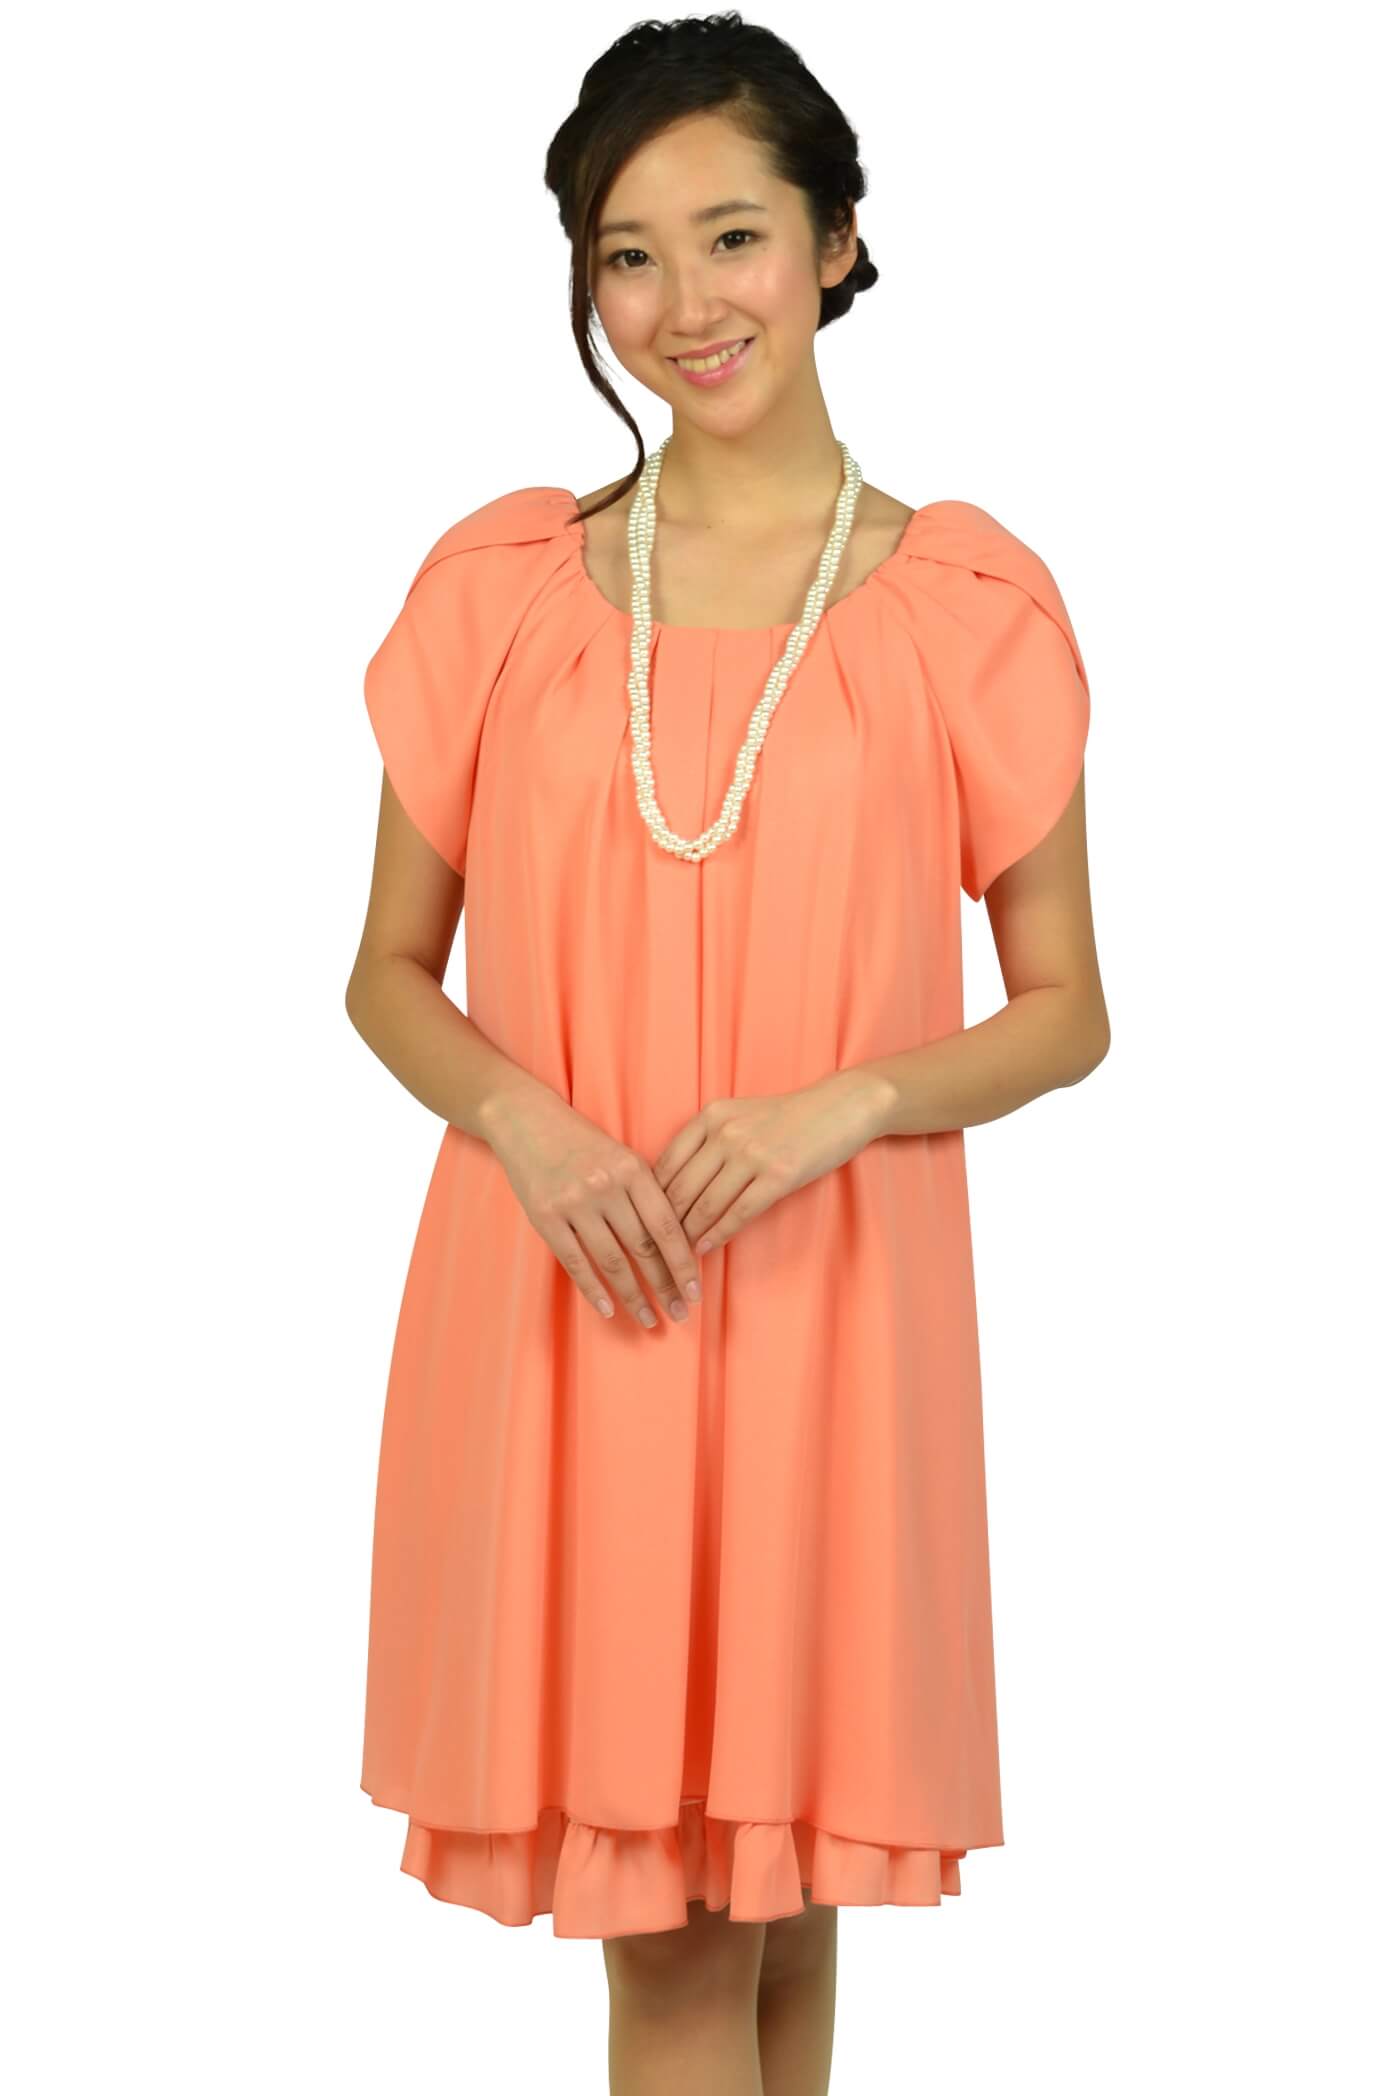 アプレジュール（Apres jour）ラメフリルコーラルオレンジドレス